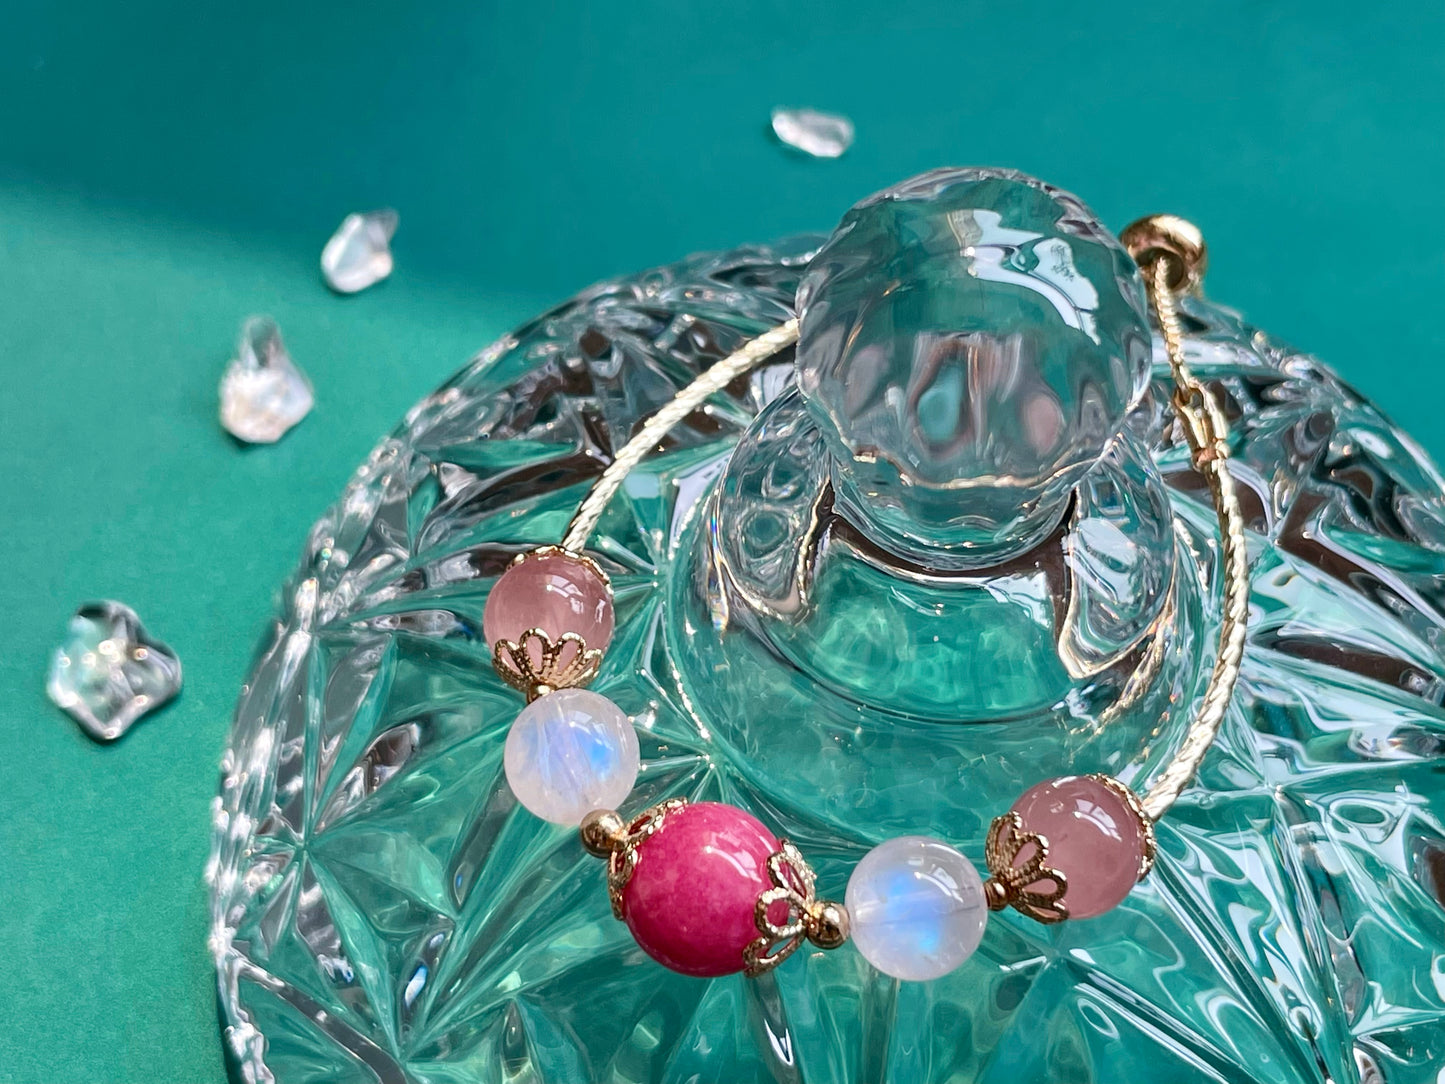 Natural Rhodolite Moonstone Pink Crystal Bangle Bracelet